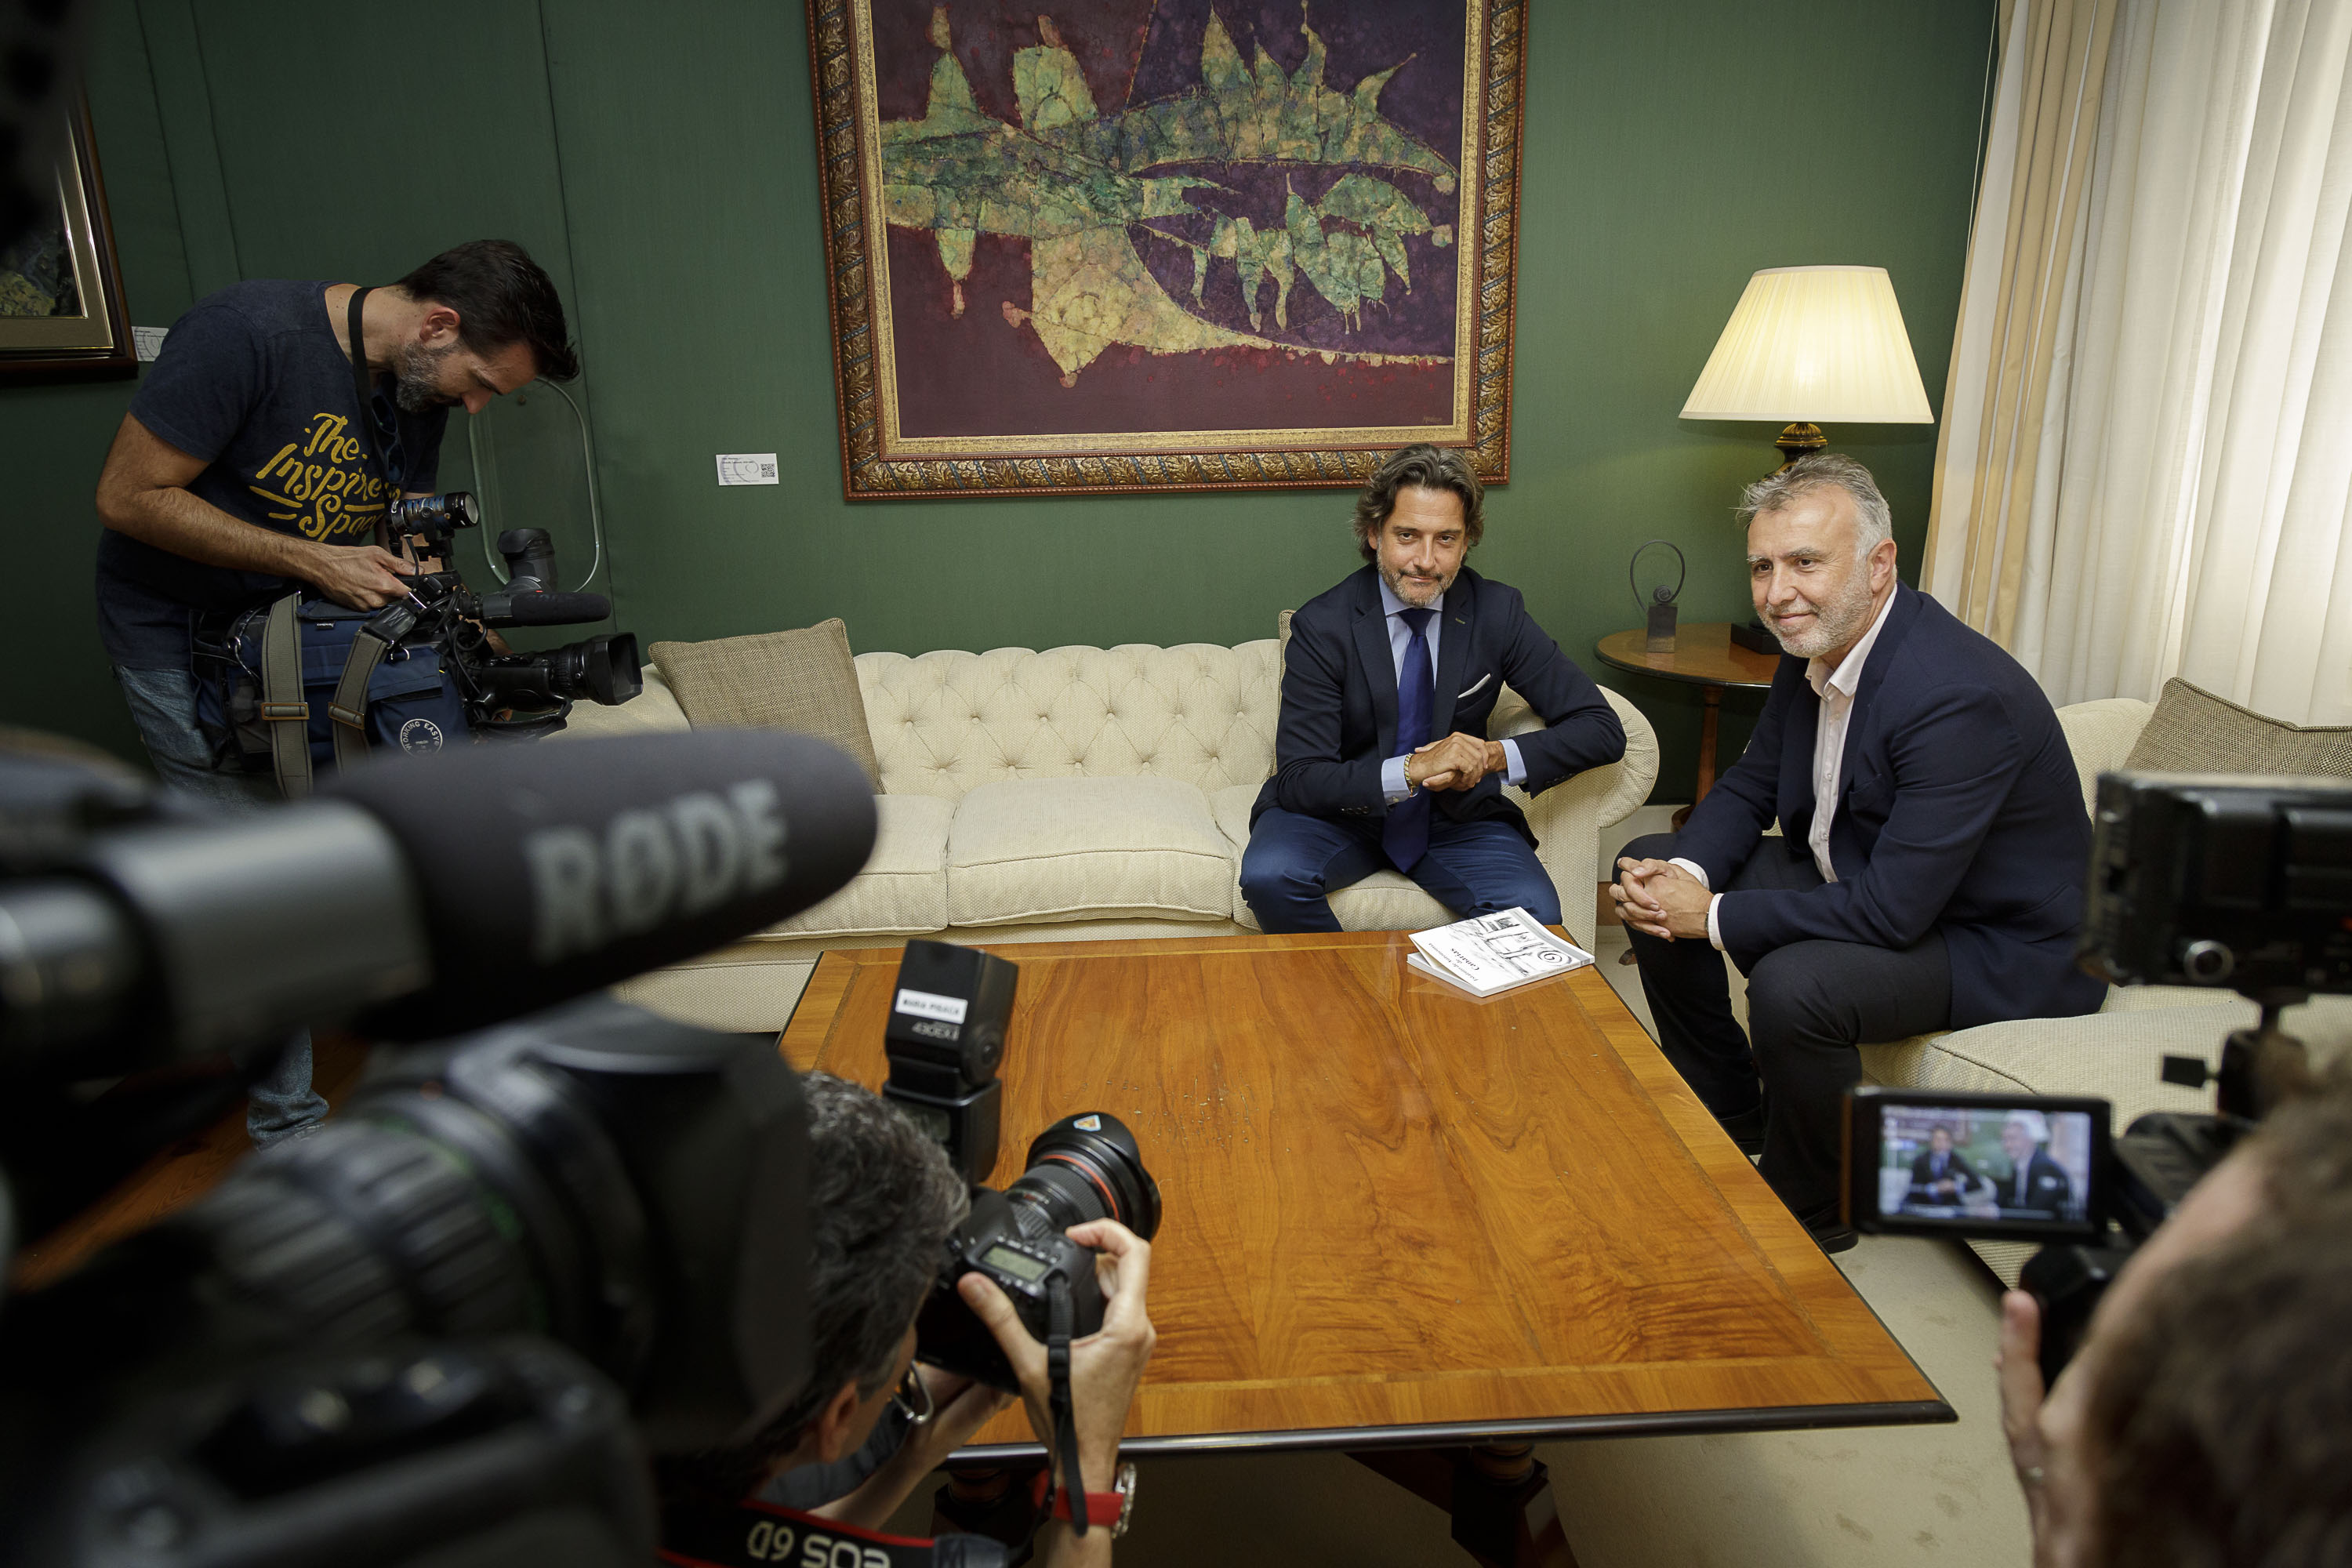 El presidente del Parlamento de Canarias y el presidente de Canarias durante una reunión